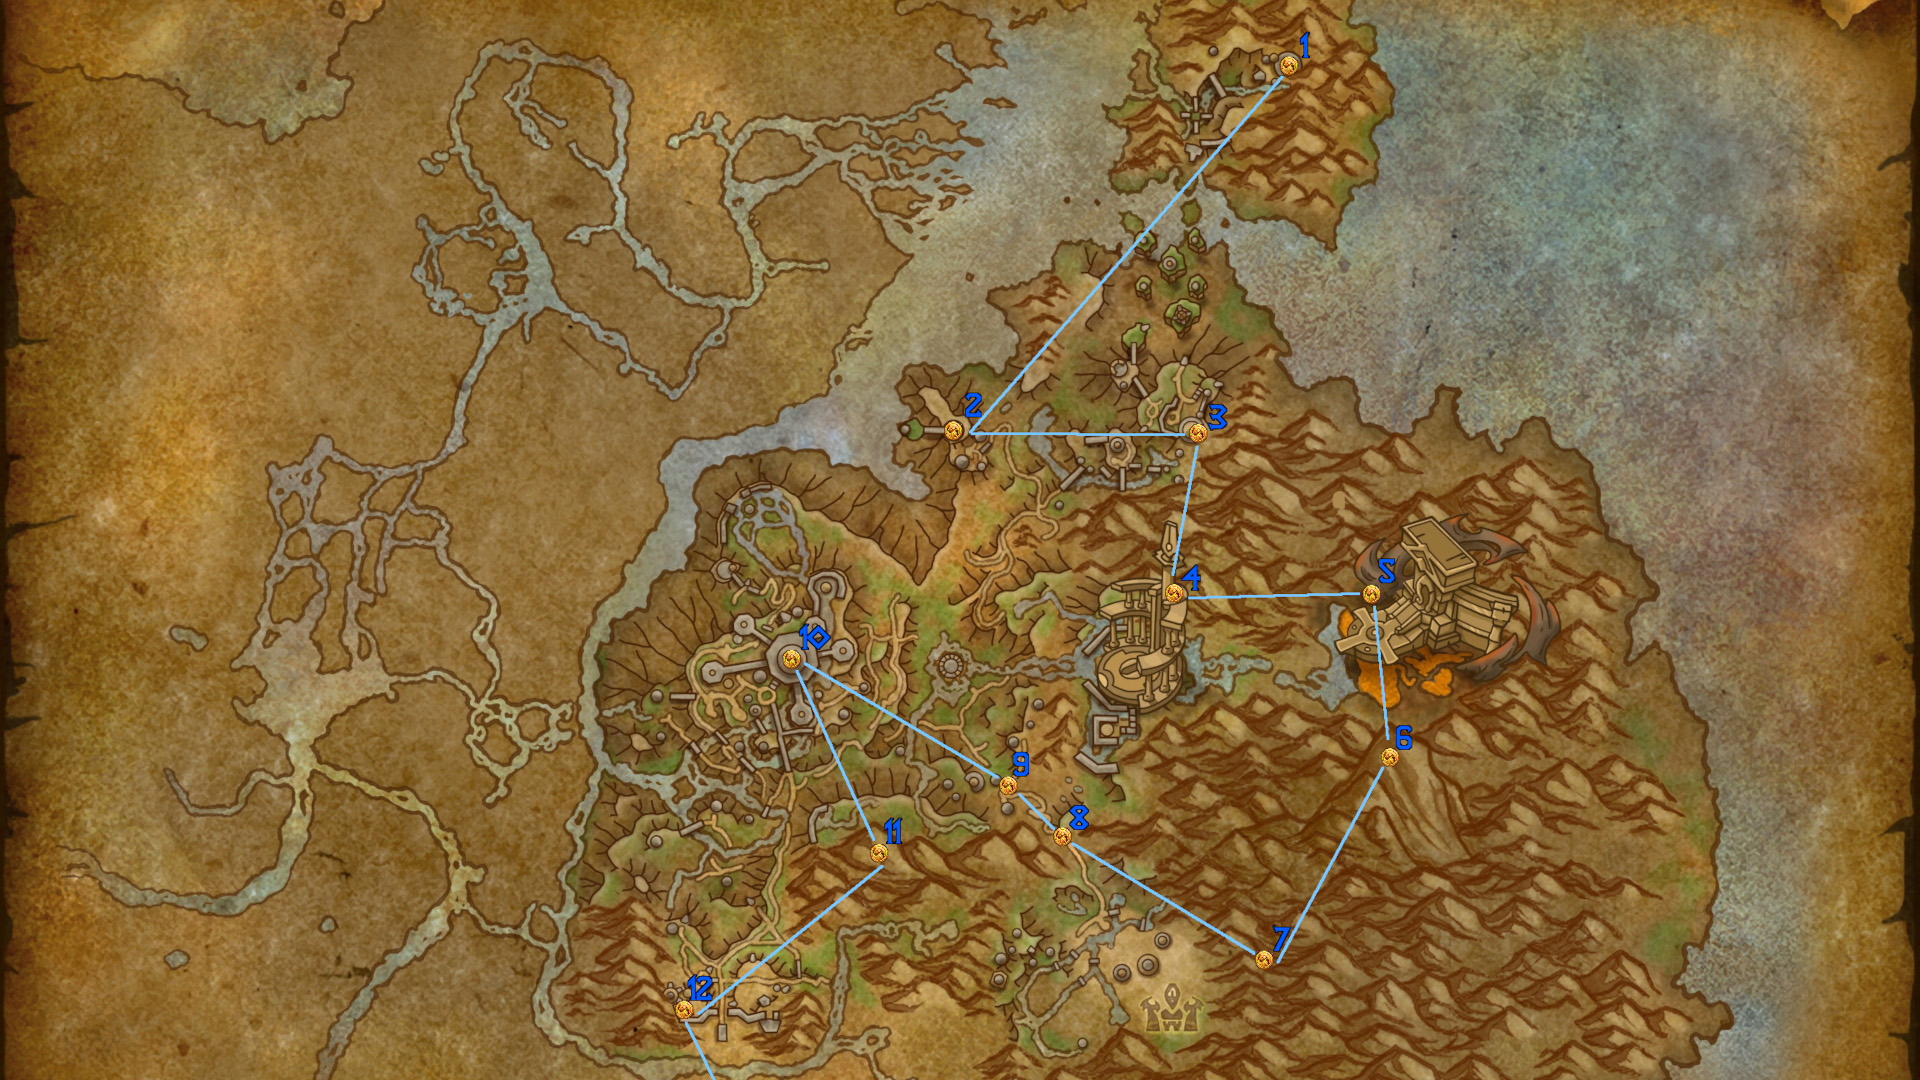 De World of Warcraft Dragonflight -kaart van de Thaldraszus met pinnen die de Dragon Glyphs benadrukken